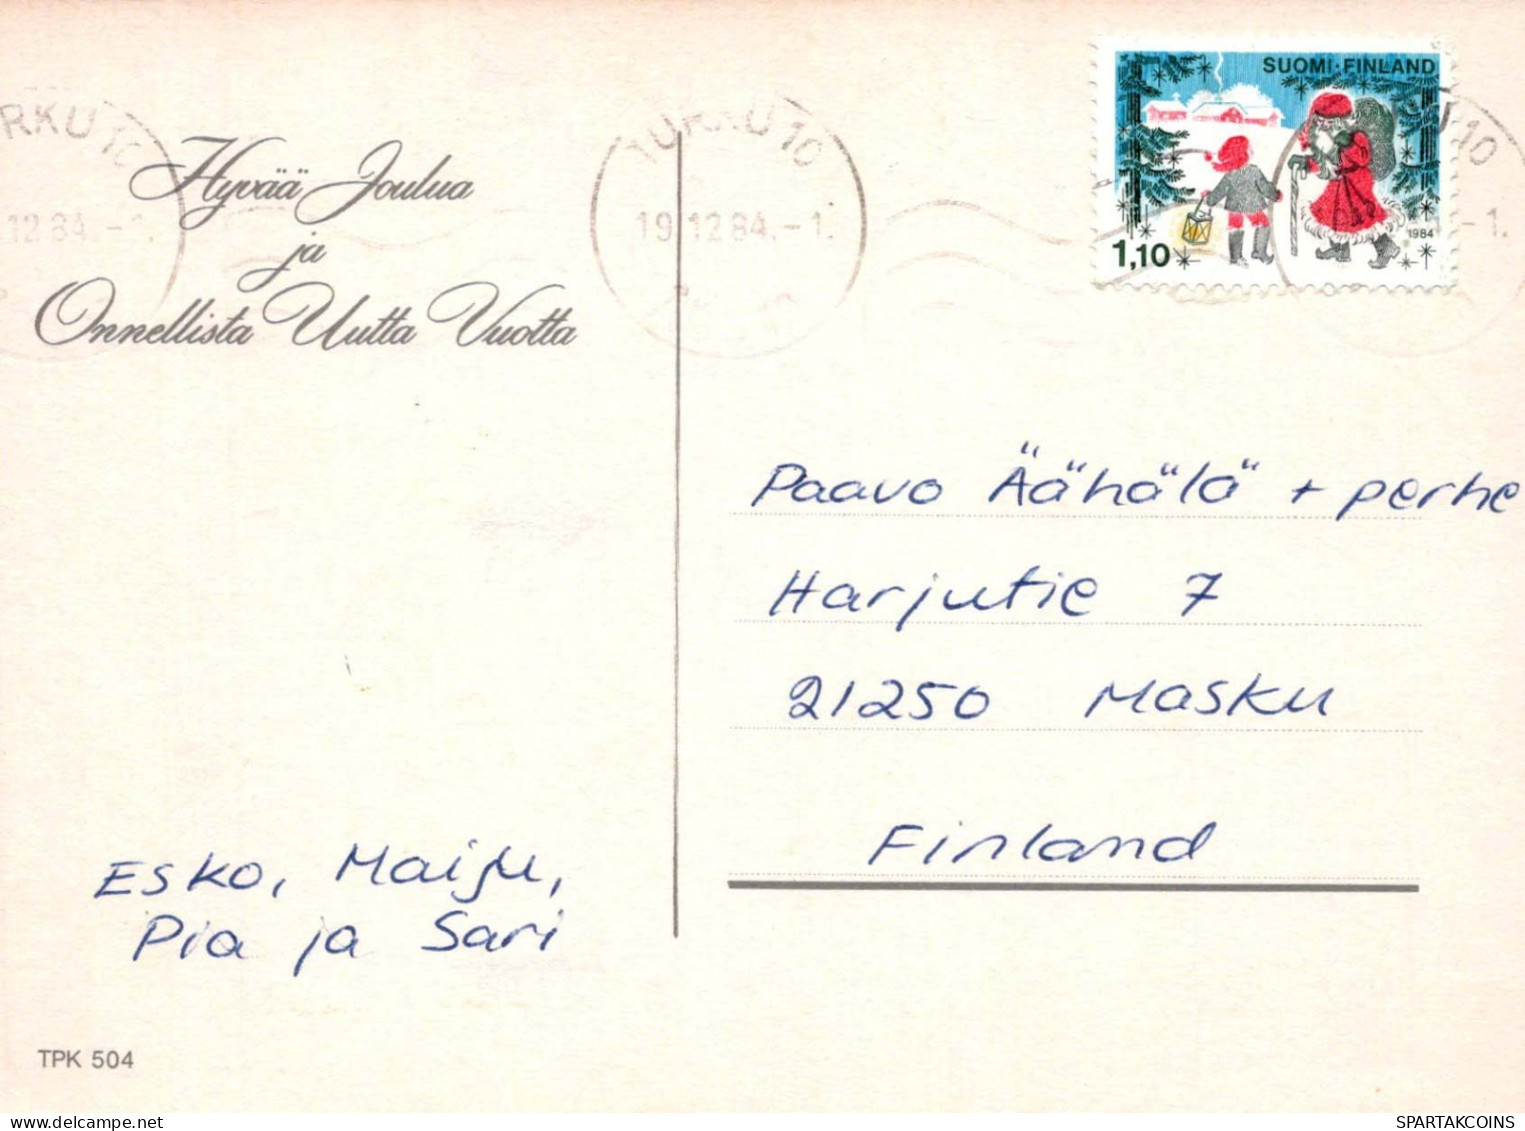 PÈRE NOËL Bonne Année Noël Vintage Carte Postale CPSM #PBL205.FR - Santa Claus